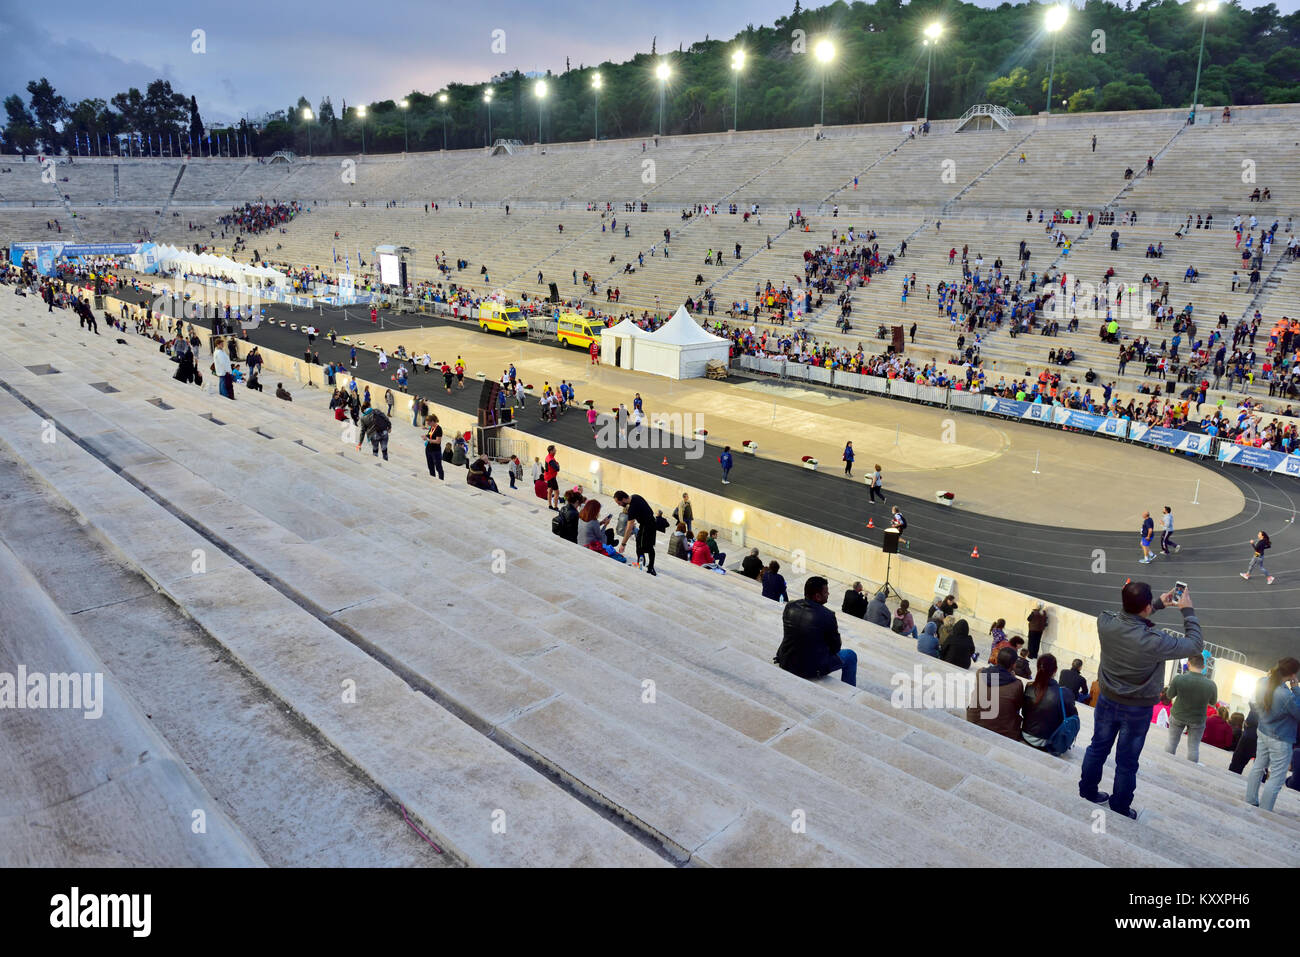 En el interior del Estadio Panathenaic Olímpico cerca del final de una carrera deportiva Foto de stock